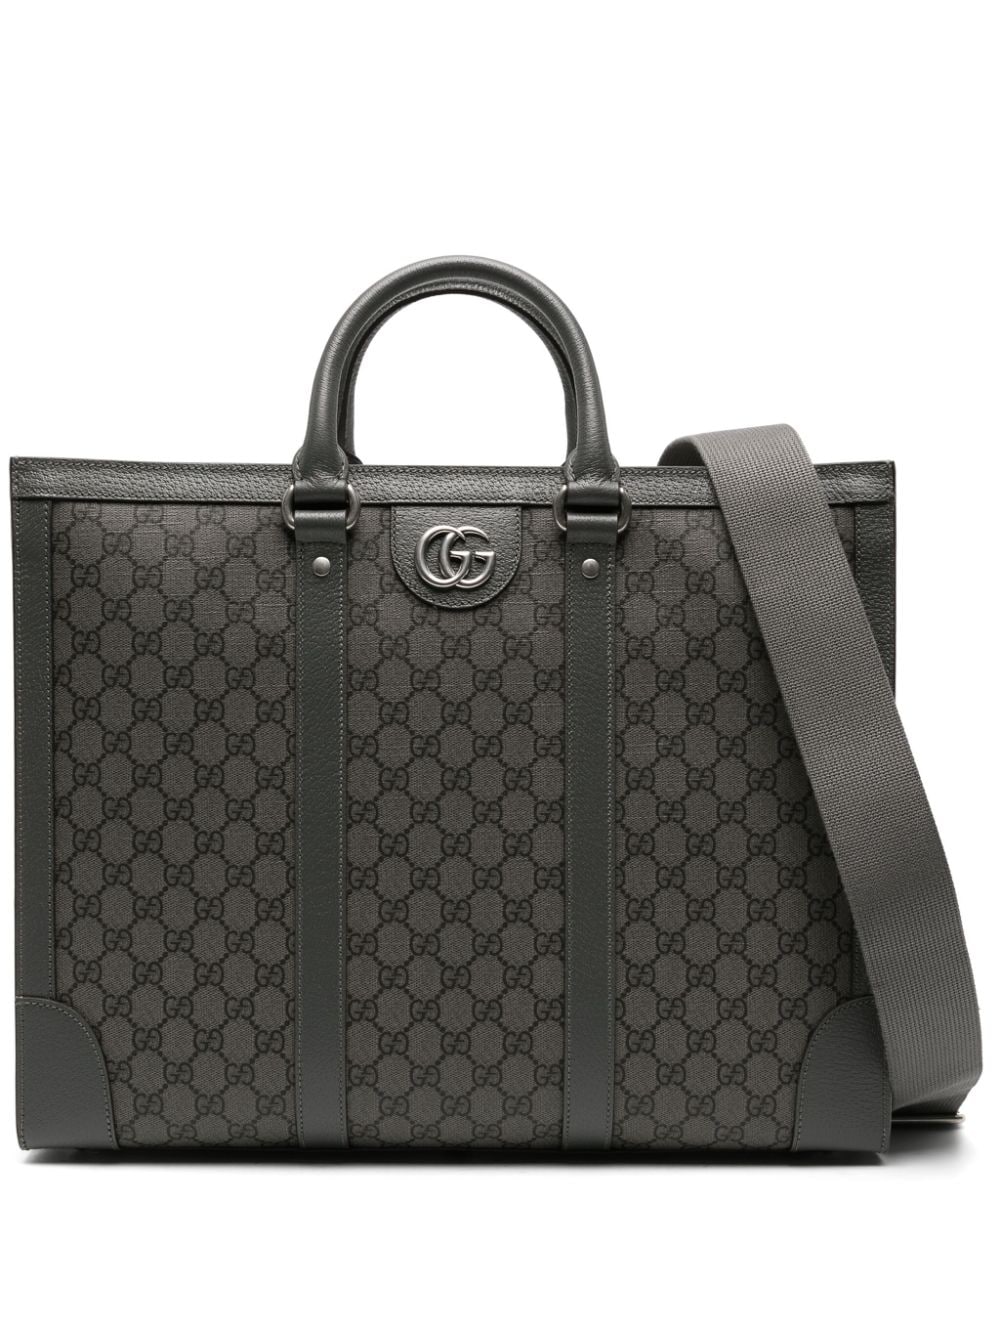 Gucci Gg Canvas Tote Bag In Gray